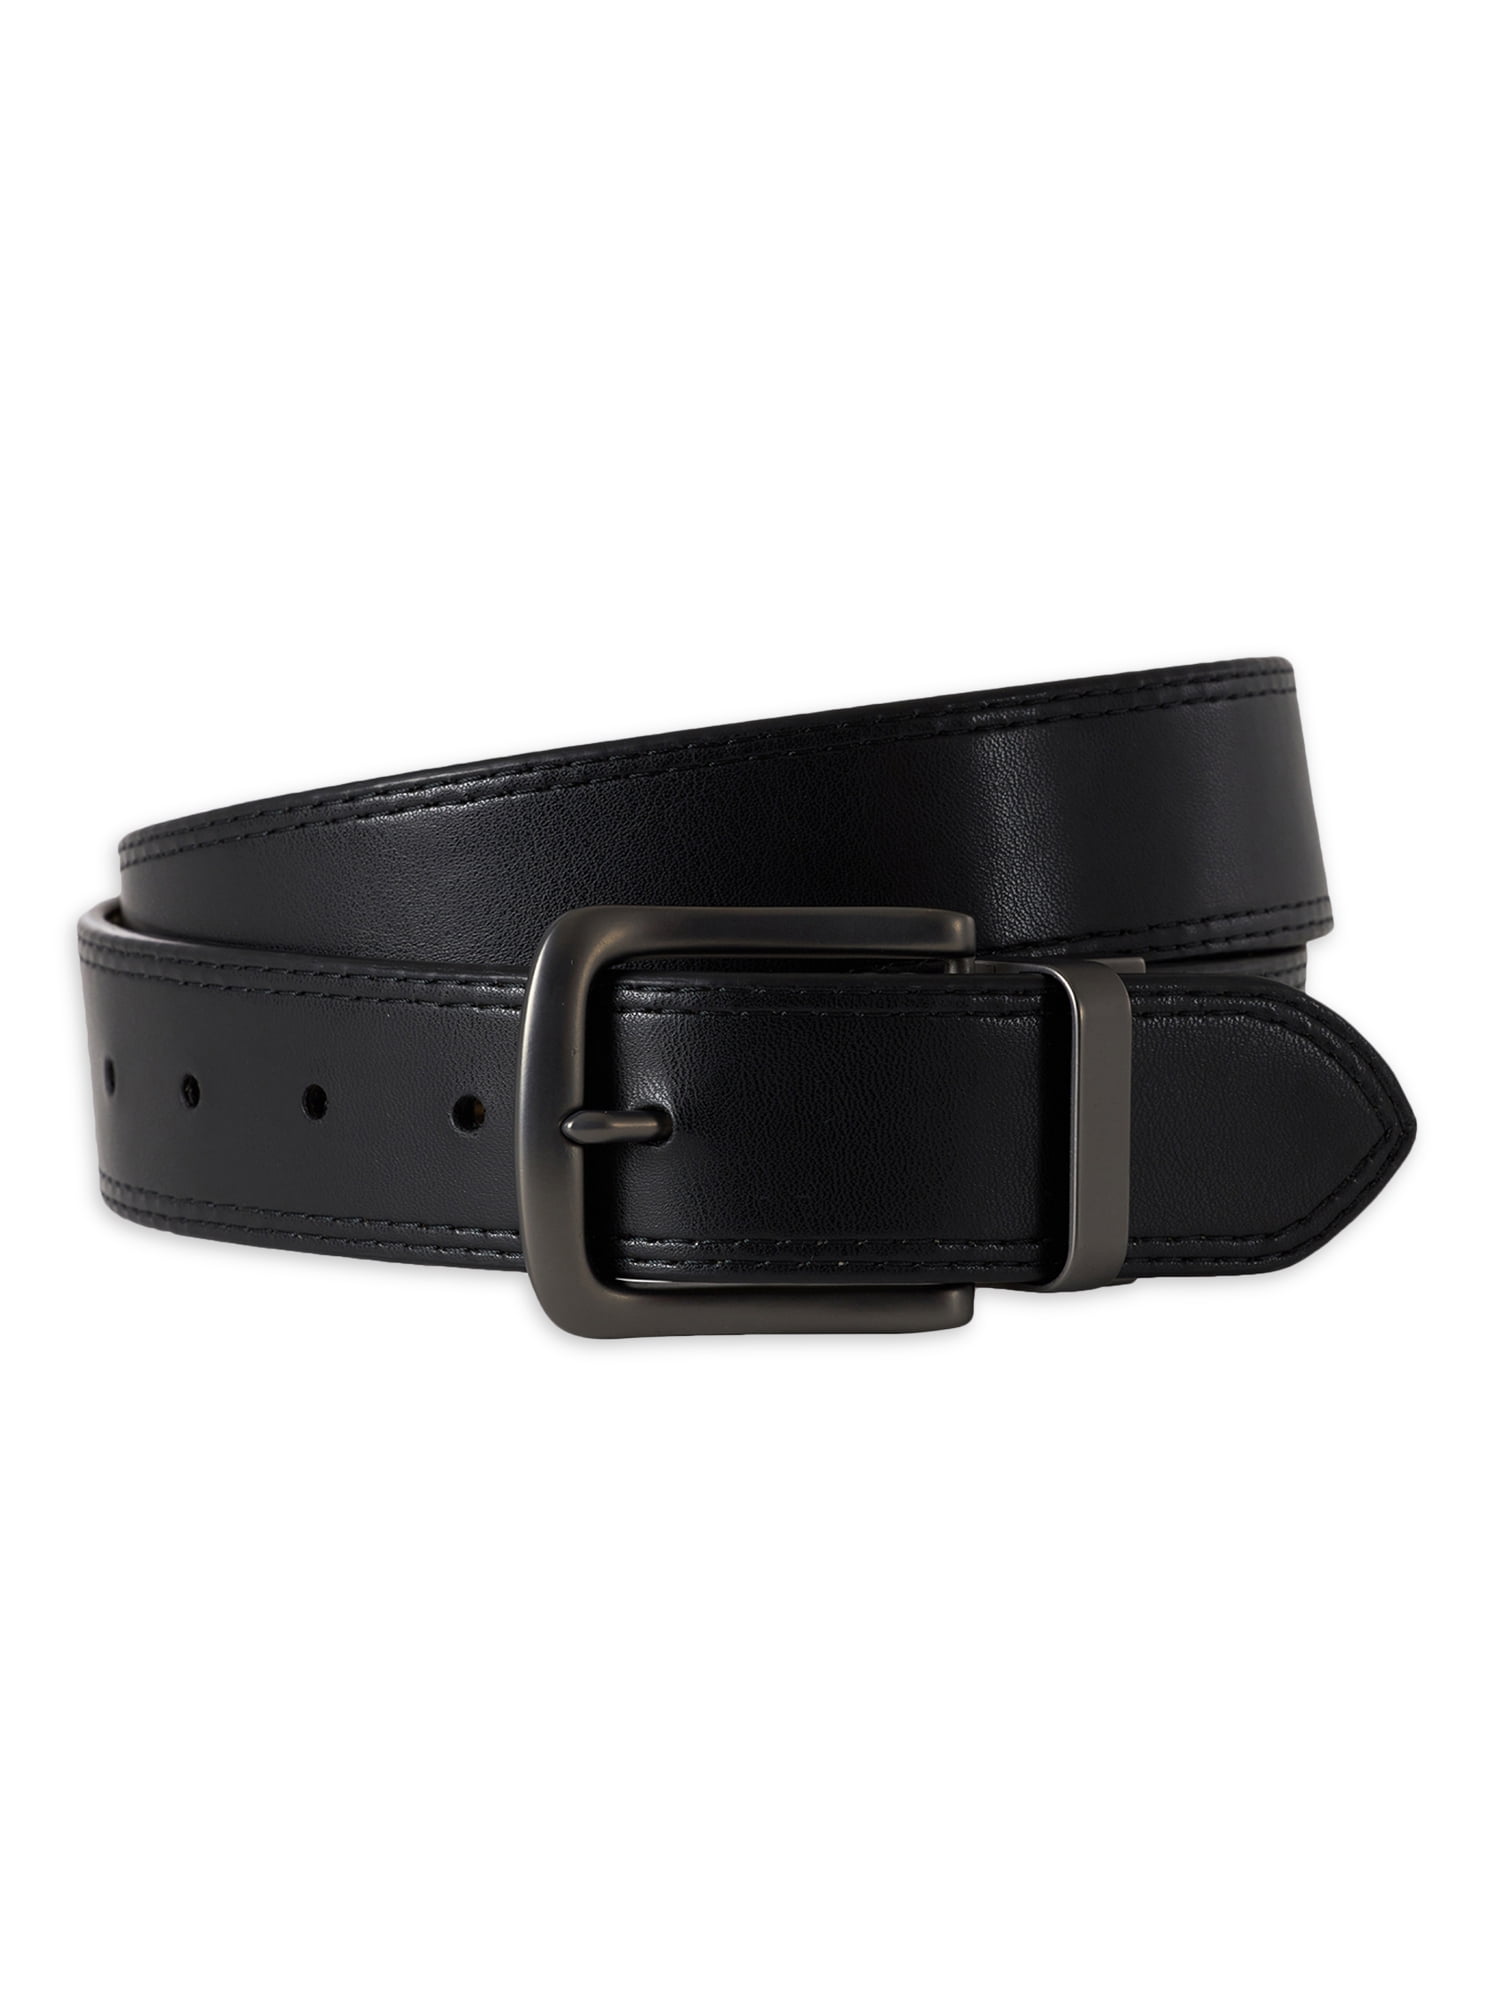 Wrangler Men's Reversible Leather Belt